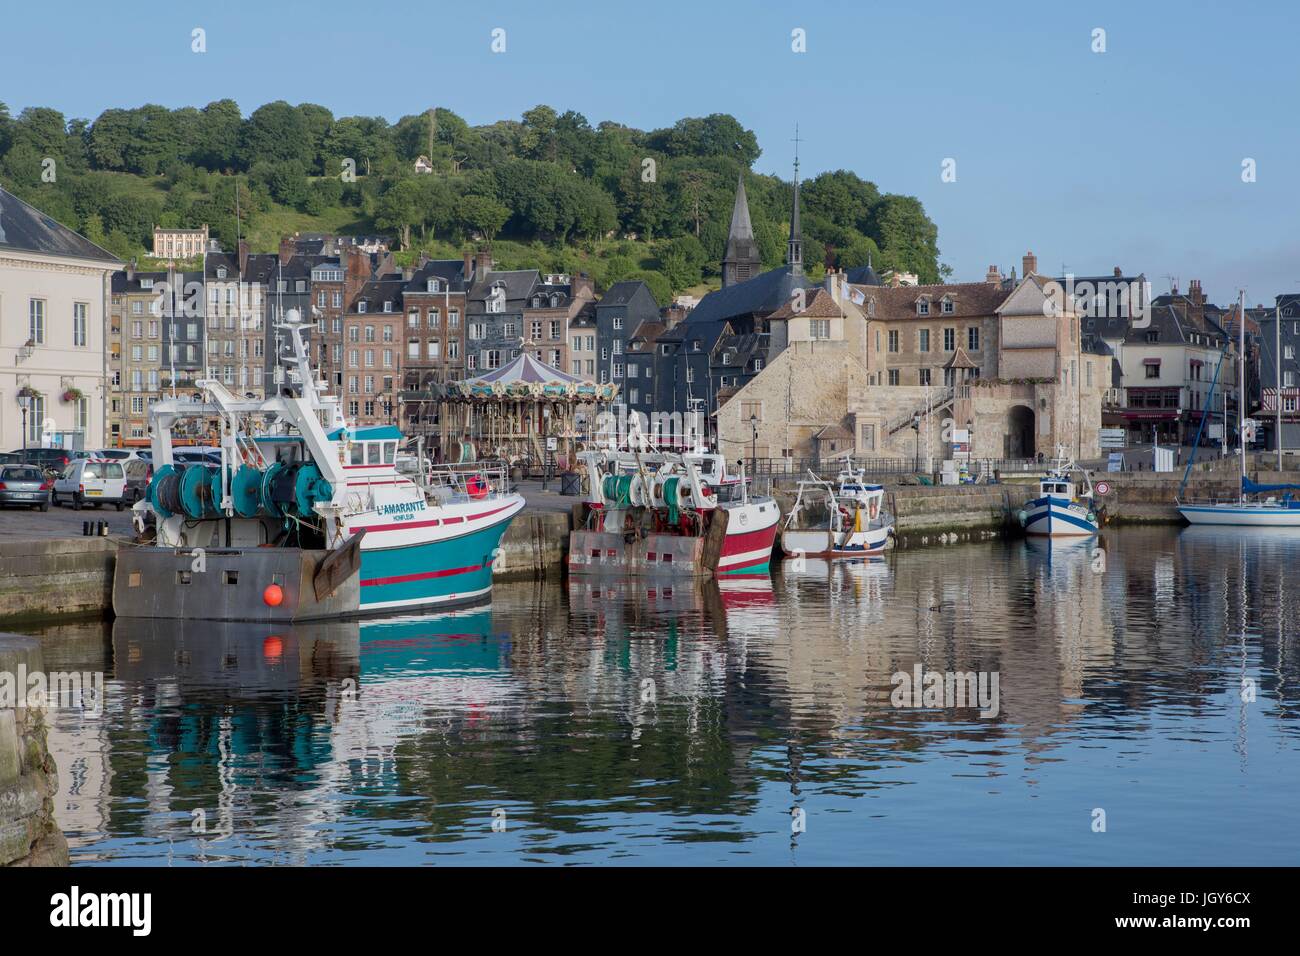 Francia, Région Normandie, Calvados, Côte Fleurie, Honfleur, porta Bassin de l'Est, bateaux de pêche Photo Gilles Targat Foto Stock